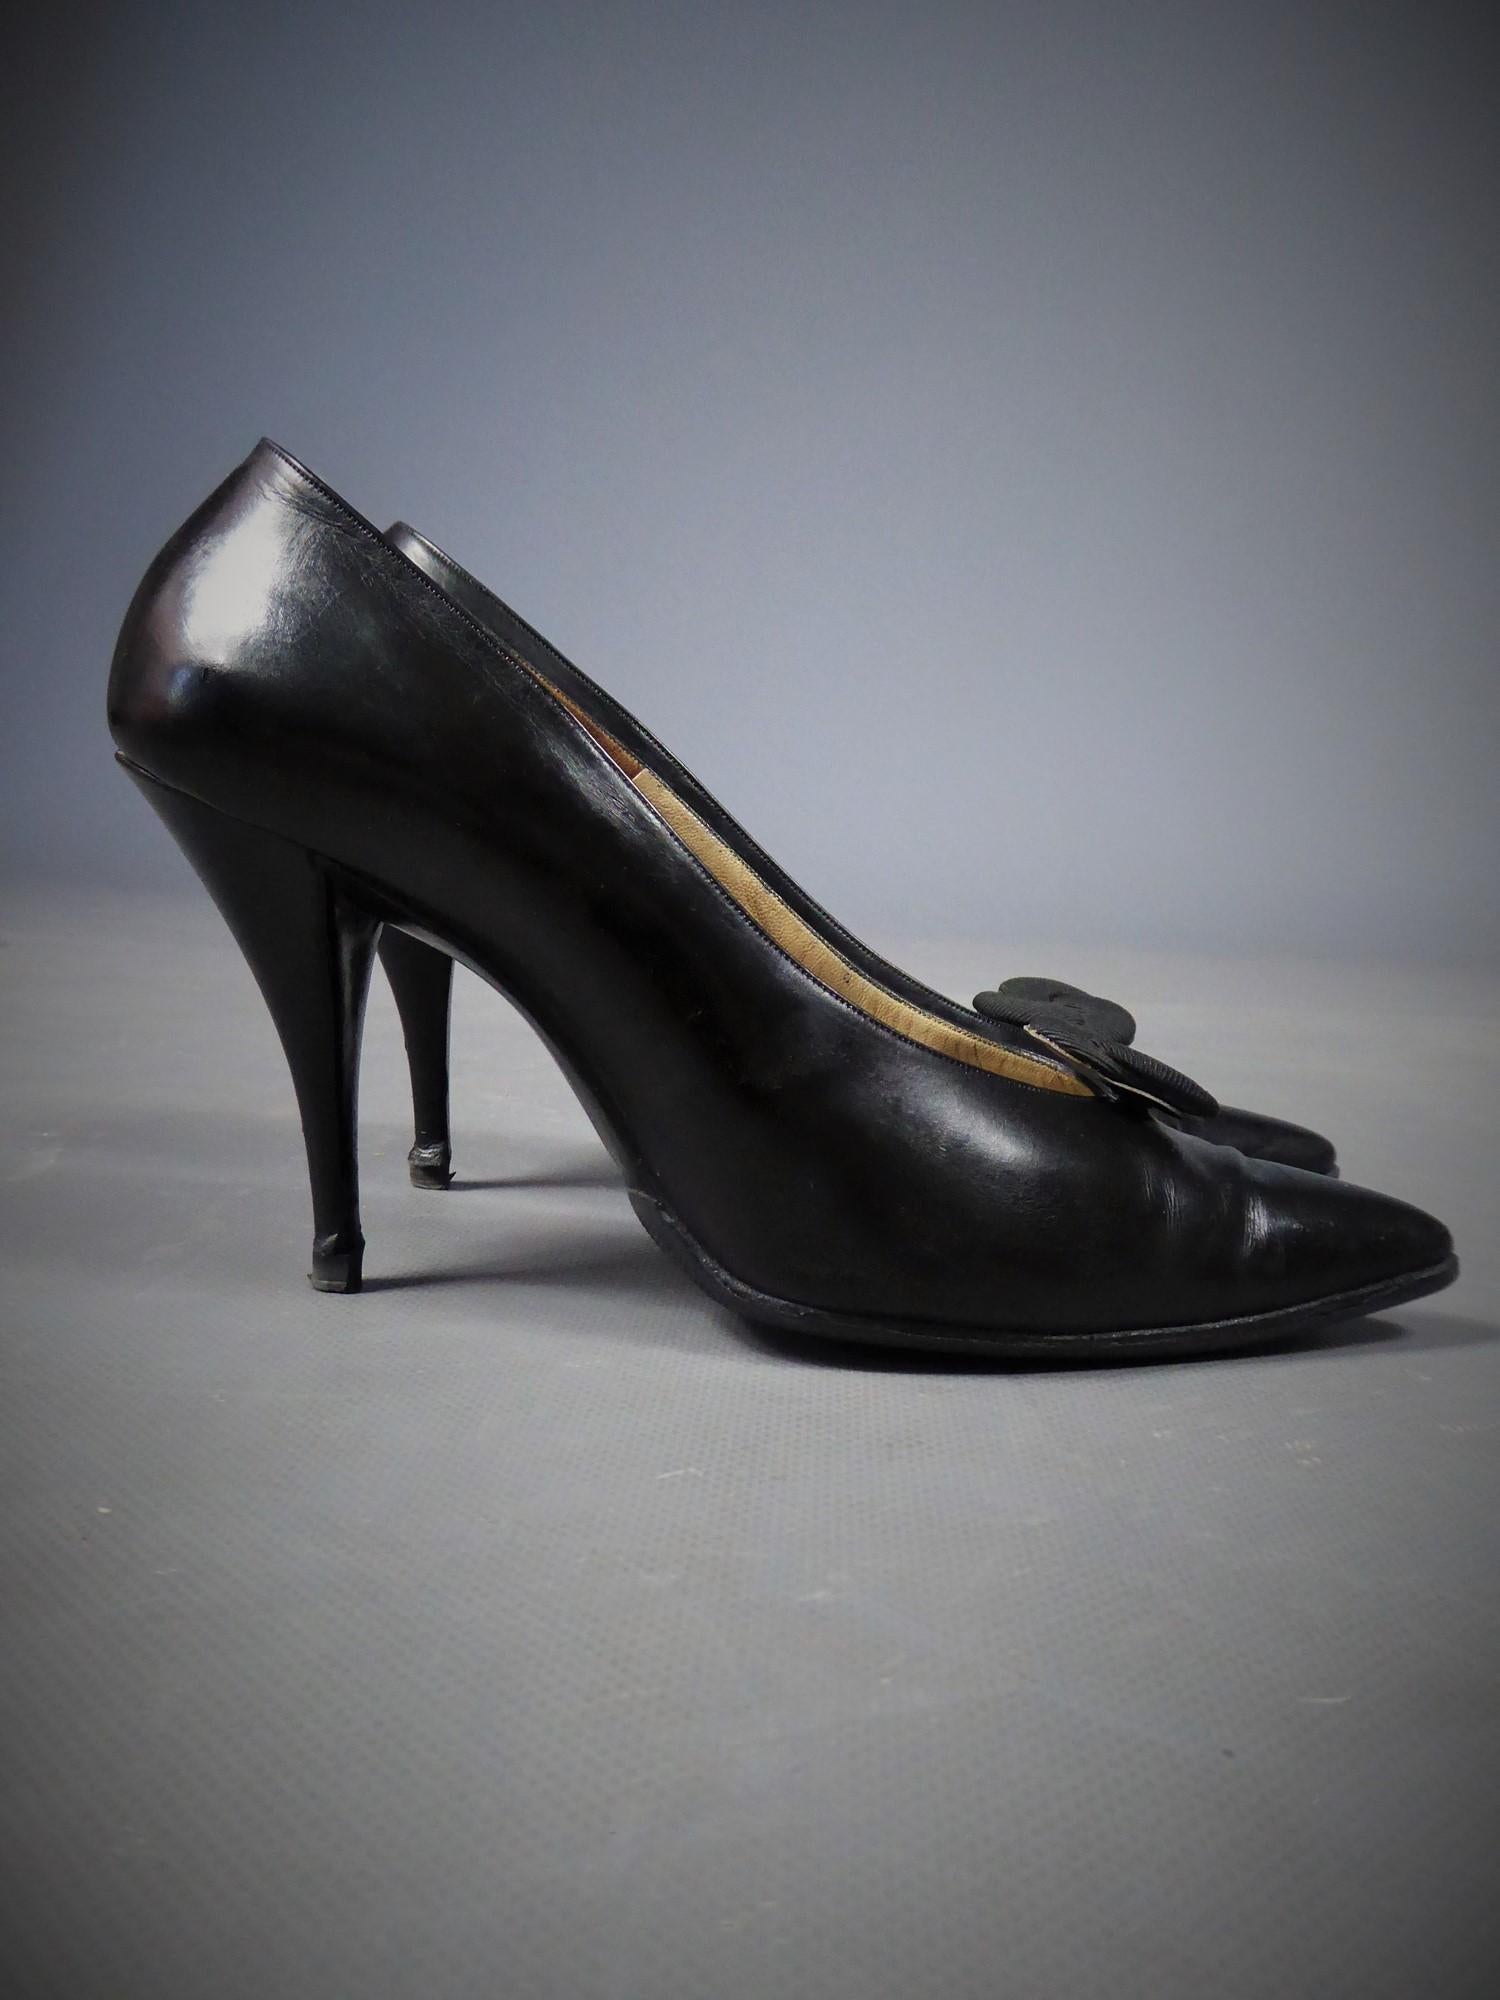 Circa 1960
France

Paire de talons de soirée Christian Dior par Roger Vivier en cuir noir brillant des années 60. Chaussures à talons aiguilles, de forme incurvée et pointue à l'avant, décorées d'une rosette amovible en soie cannelée noire ottomane.